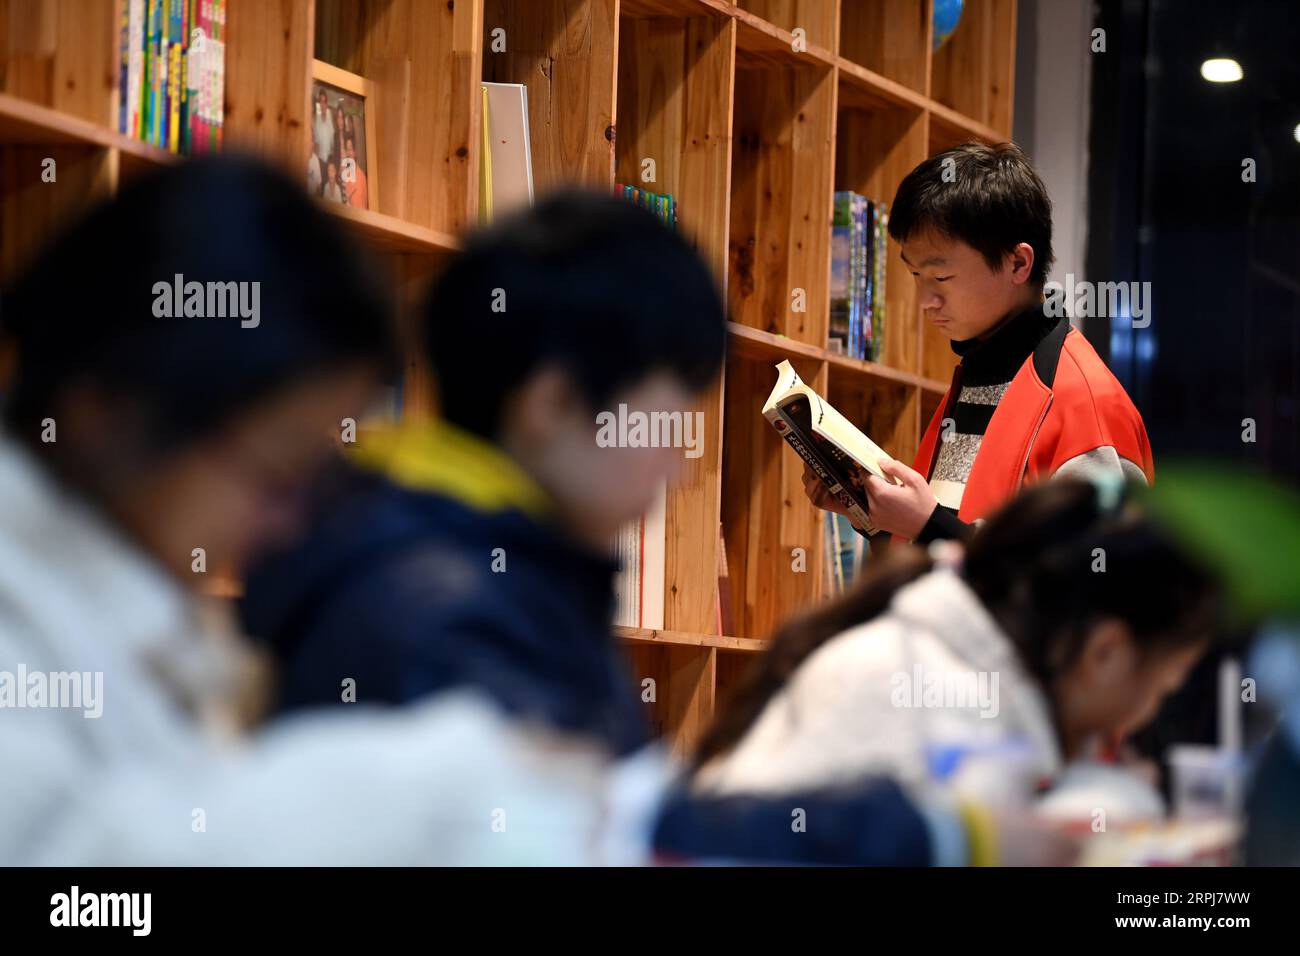 191130 -- HEFEI, 30 novembre 2019 -- Junjun, orphelin affecté par le VIH/SIDA, lit un livre dans la ville de Fuyang, dans la province de l'Anhui, dans l'est de la Chine, le 25 novembre 2019. Il est difficile de relier Junjun, âgé de 18 ans, à un orphelin affecté par le VIH/SIDA. Étudiant dans un lycée à Fuyang, le garçon malheureux mais confiant ressemble à ses pairs. Né en 2001 d'un bébé infecté par le VIH en raison de la transmission mère-enfant, Junjun est devenu orphelin en 2004 après que ses parents sont morts du VIH/sida. Adopté par l'Association Fuyang AIDS Orphan Salvation, Junjun a pu recevoir la même éducation que les enfants ordinaires et profiter d'une école heureuse Banque D'Images